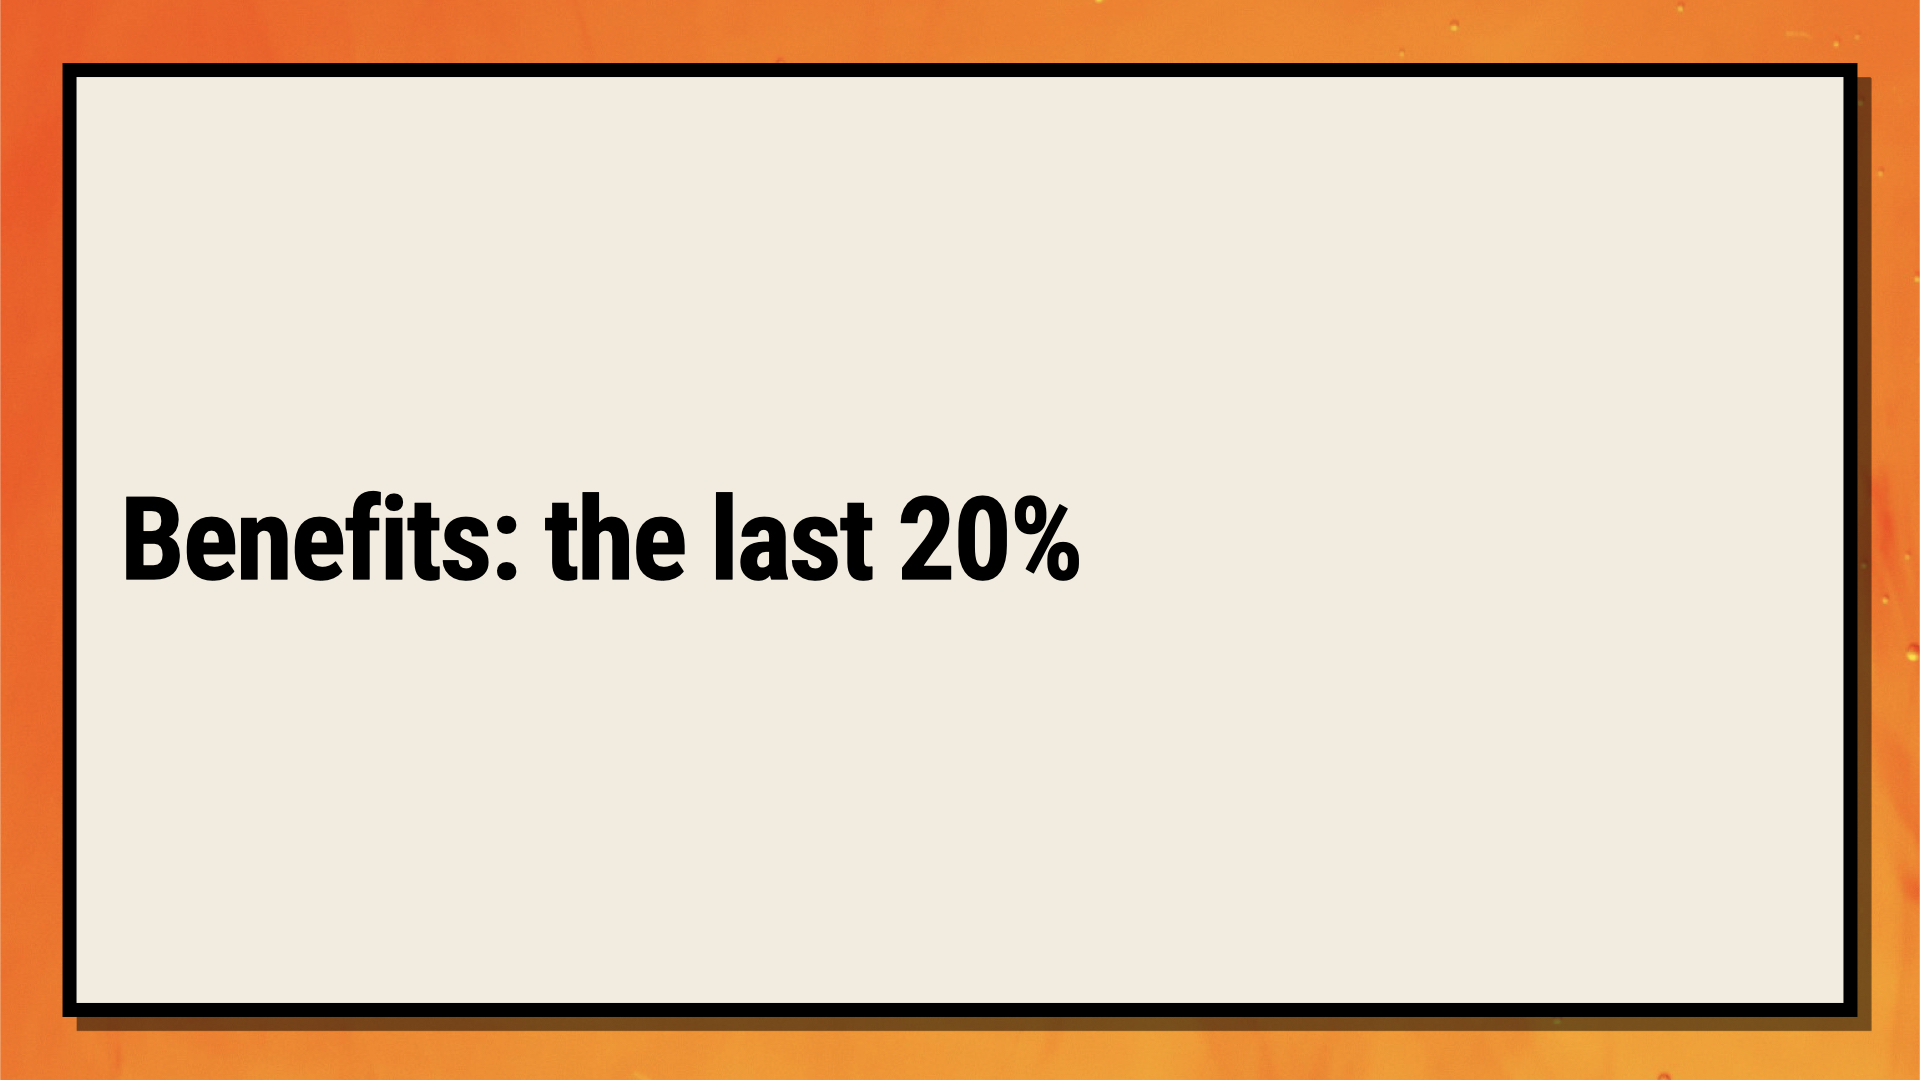 Benefits: the last 20%